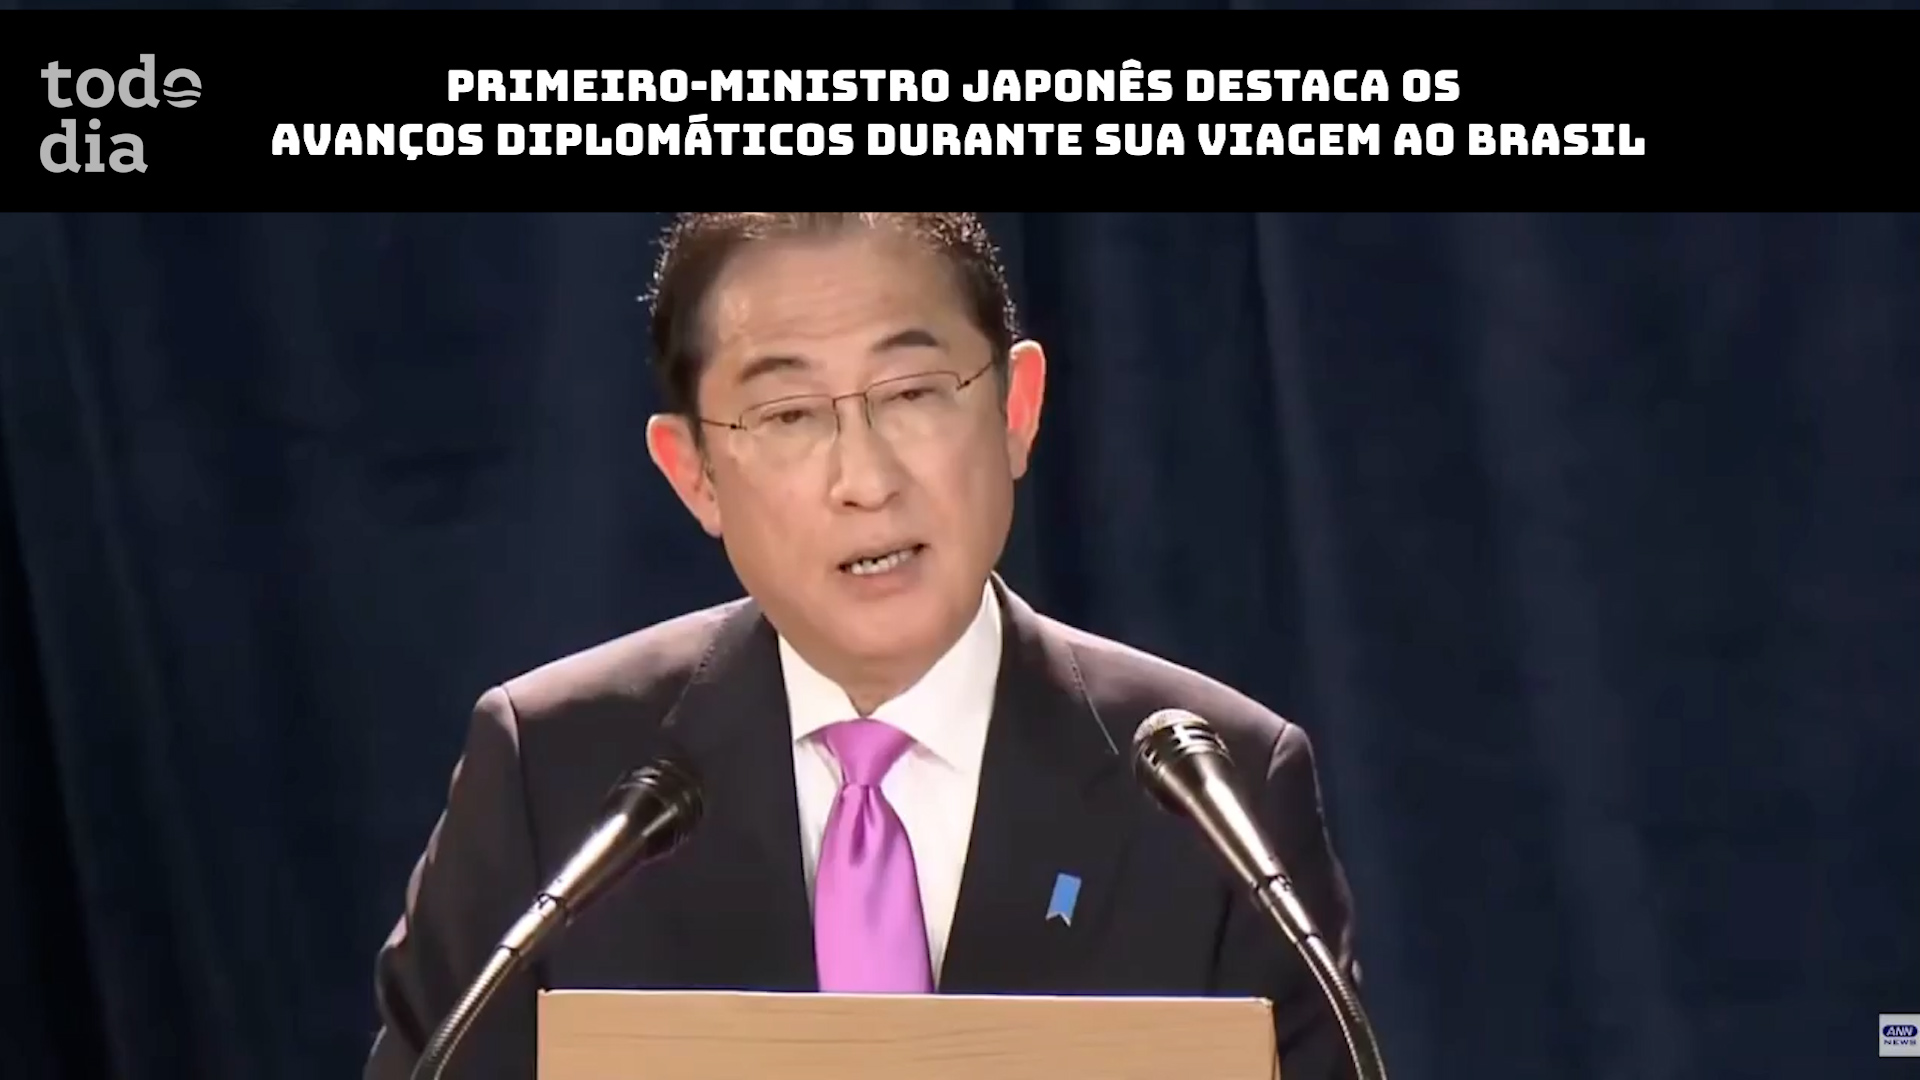 Primeiro-Ministro japonês destaca os avanços diplomáticos durante sua viagem ao Brasil 